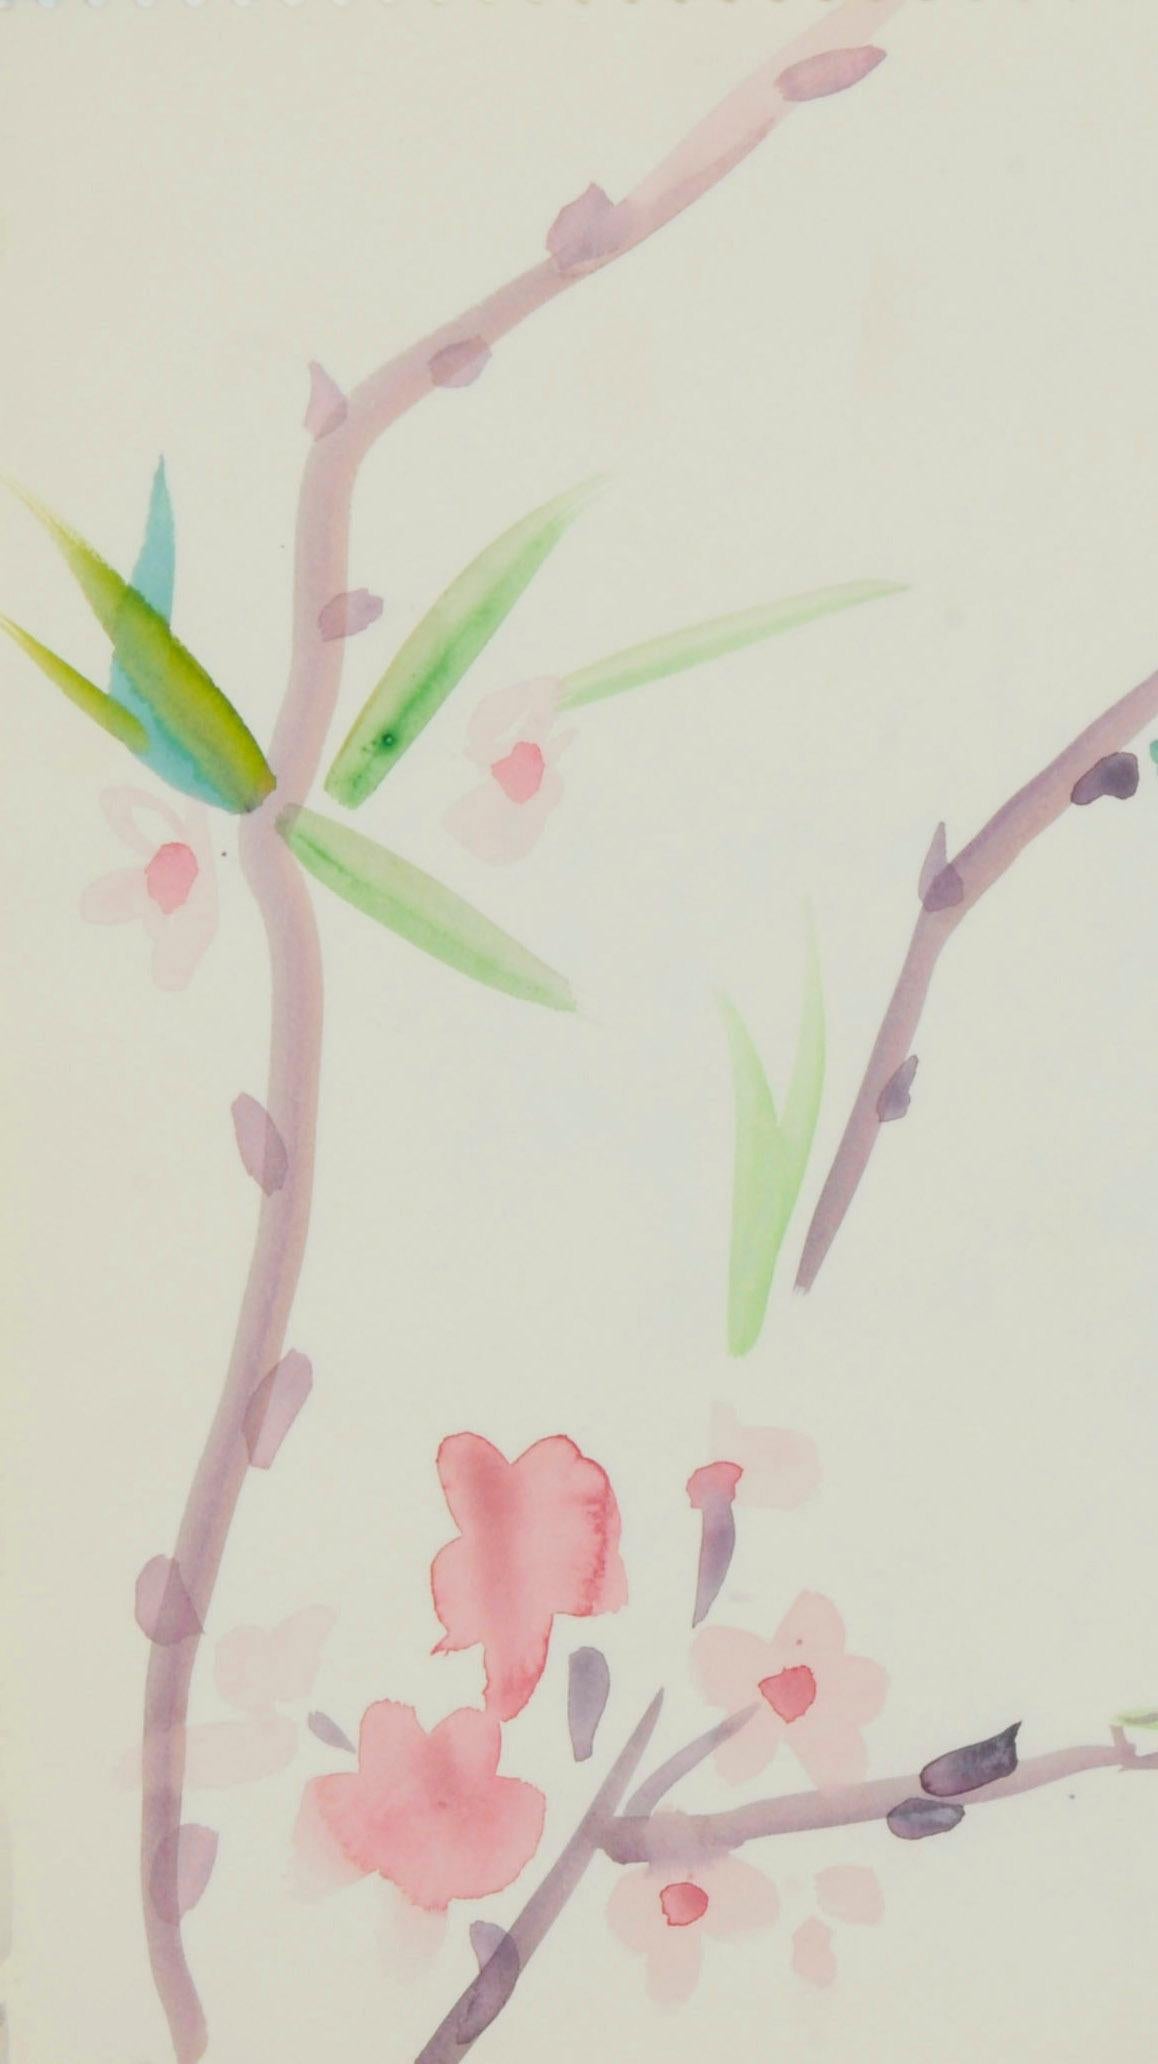 Branches et fleurs de prunier
aquarelle sur papier vélin, 1985
Signé et daté au crayon dans le coin inférieur droit
Extrait du carnet de croquis de l'artiste datant de 1985
Inspiré par l'amour d'O'Sickey pour l'art et la calligraphie japonaise et